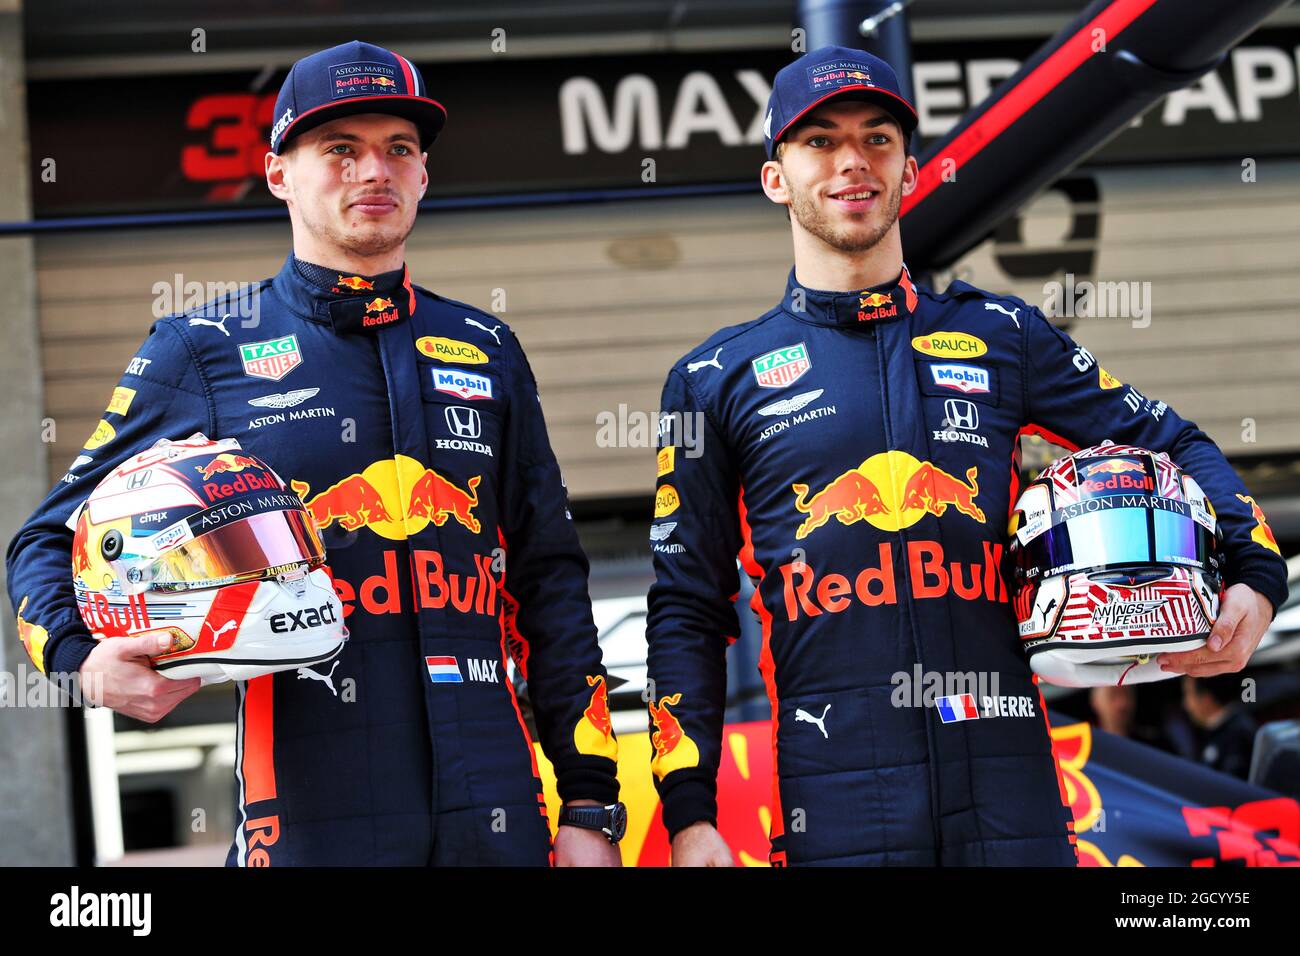 De gauche à droite) : Max Verstappen (NLD) Red Bull Racing et Pierre Gasly  (FRA) Red Bull Racing célèbrent 1000 courses de F1 avec Esso et Mobil.  Grand Prix de Chine, jeudi